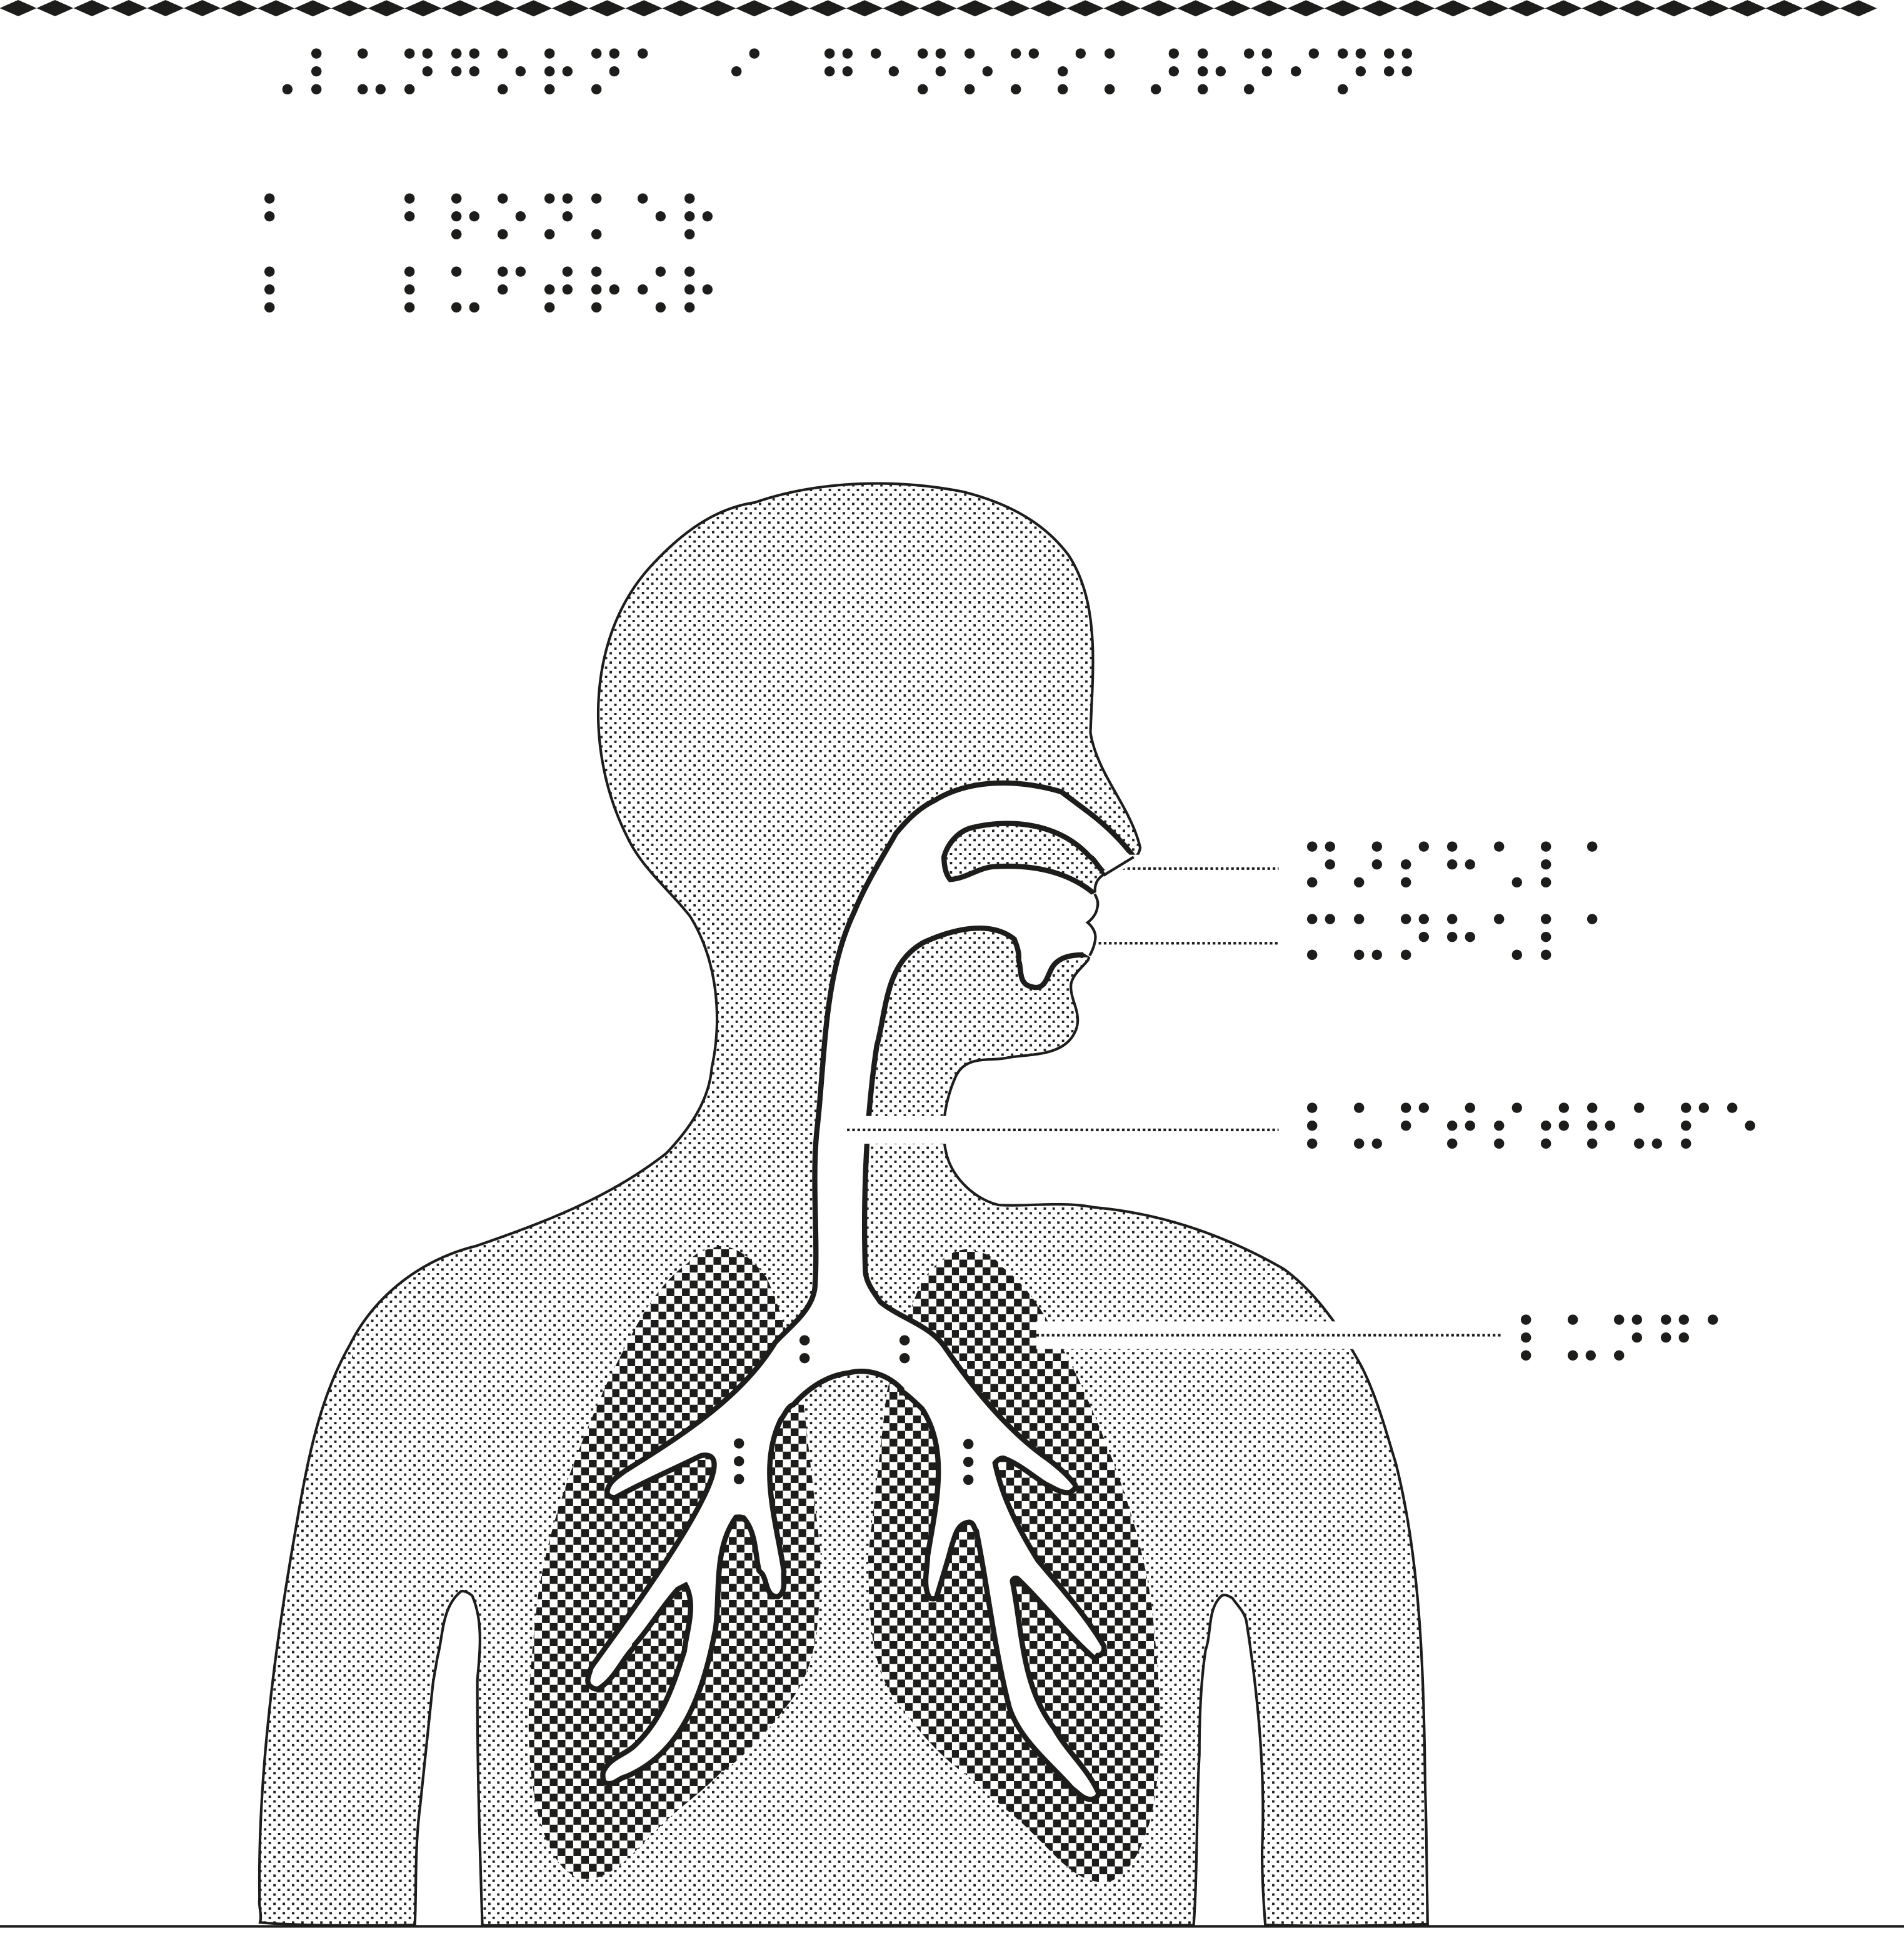 Överkropp med lungor i genomskärning.